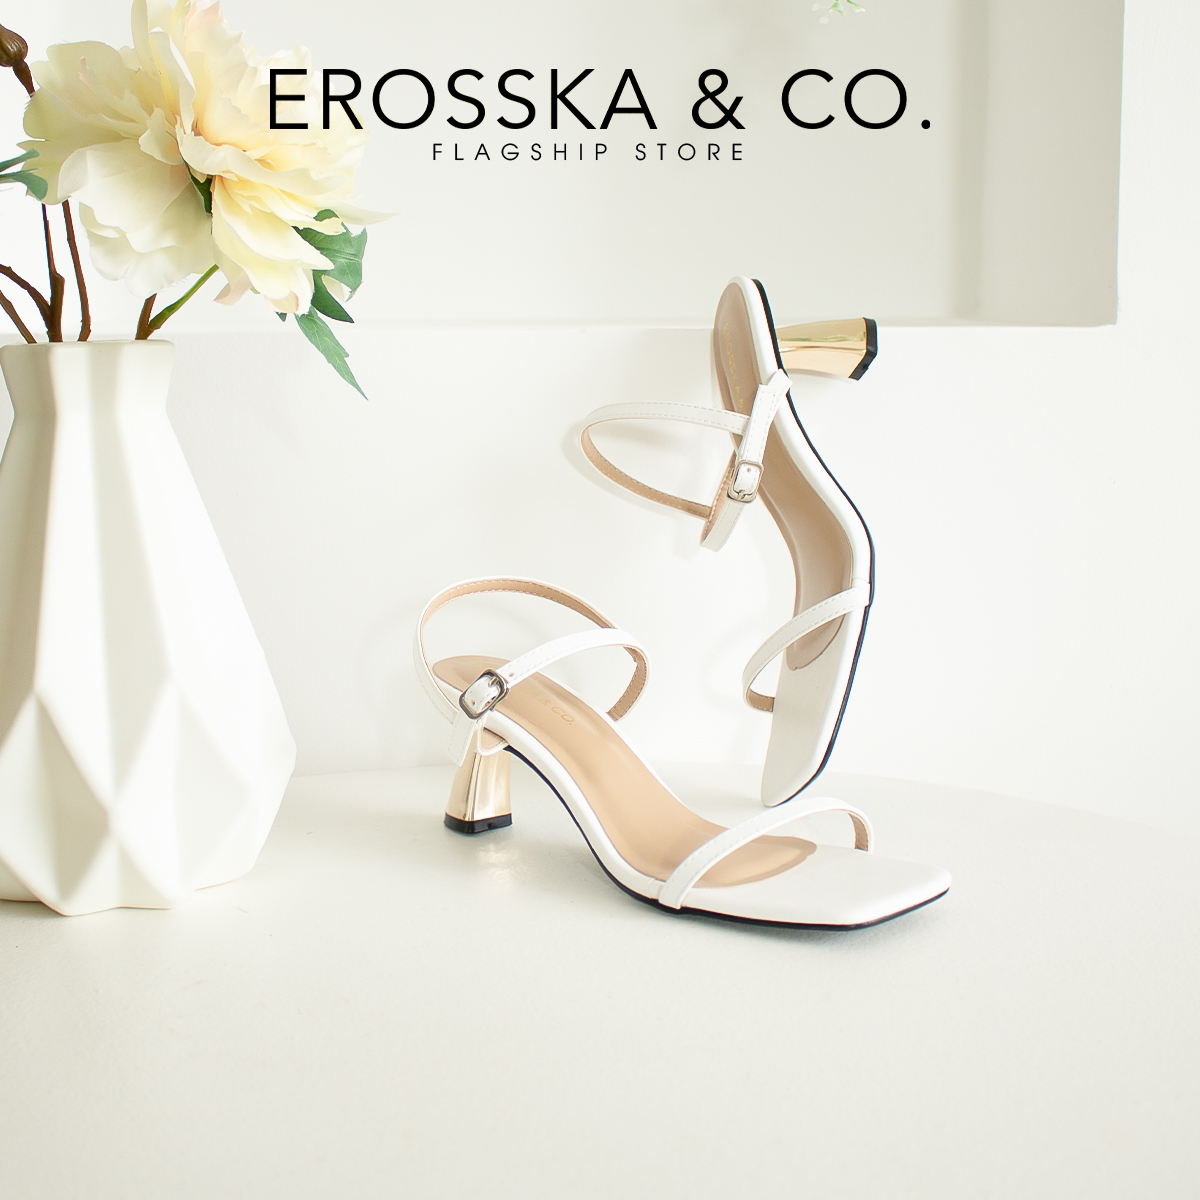 Erosska - Giày sandal cao gót nhọn kiểu dáng Hàn Quốc cao 5cm màu đen _ EB046